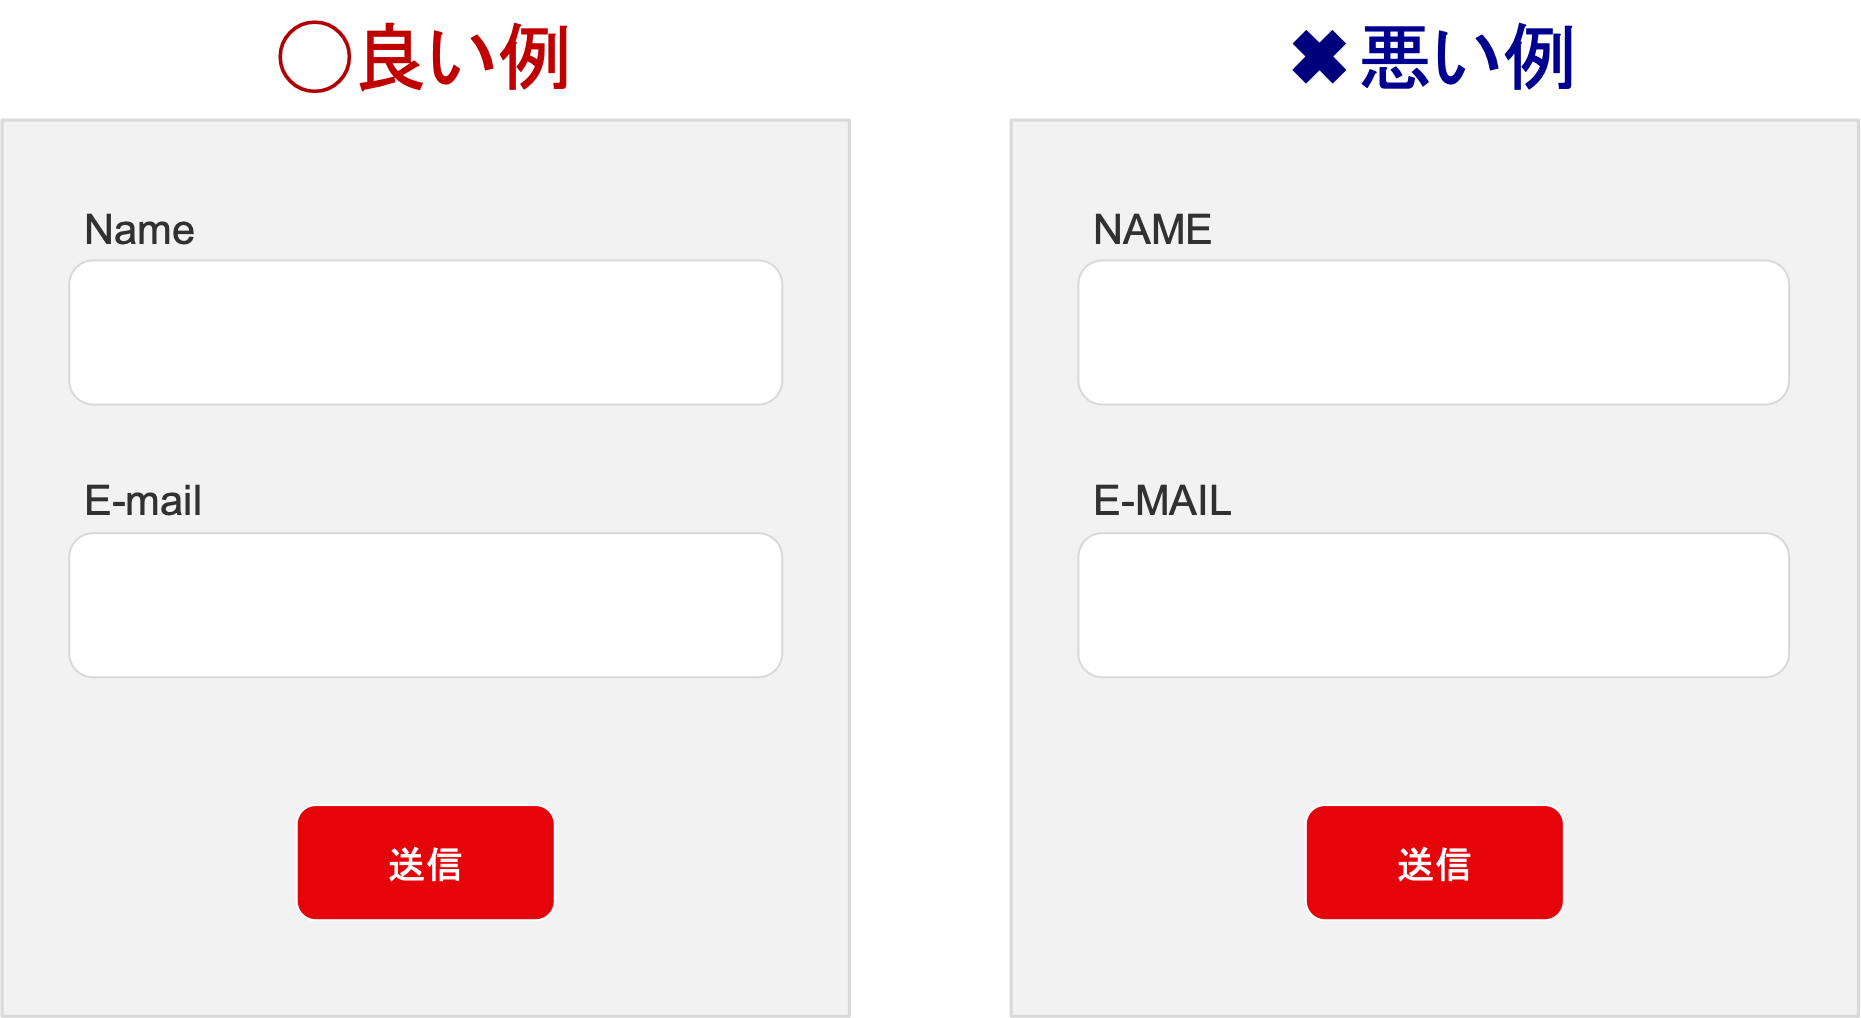 入力フォーム内のラベルを大文字と小文字で表記するデザイン例